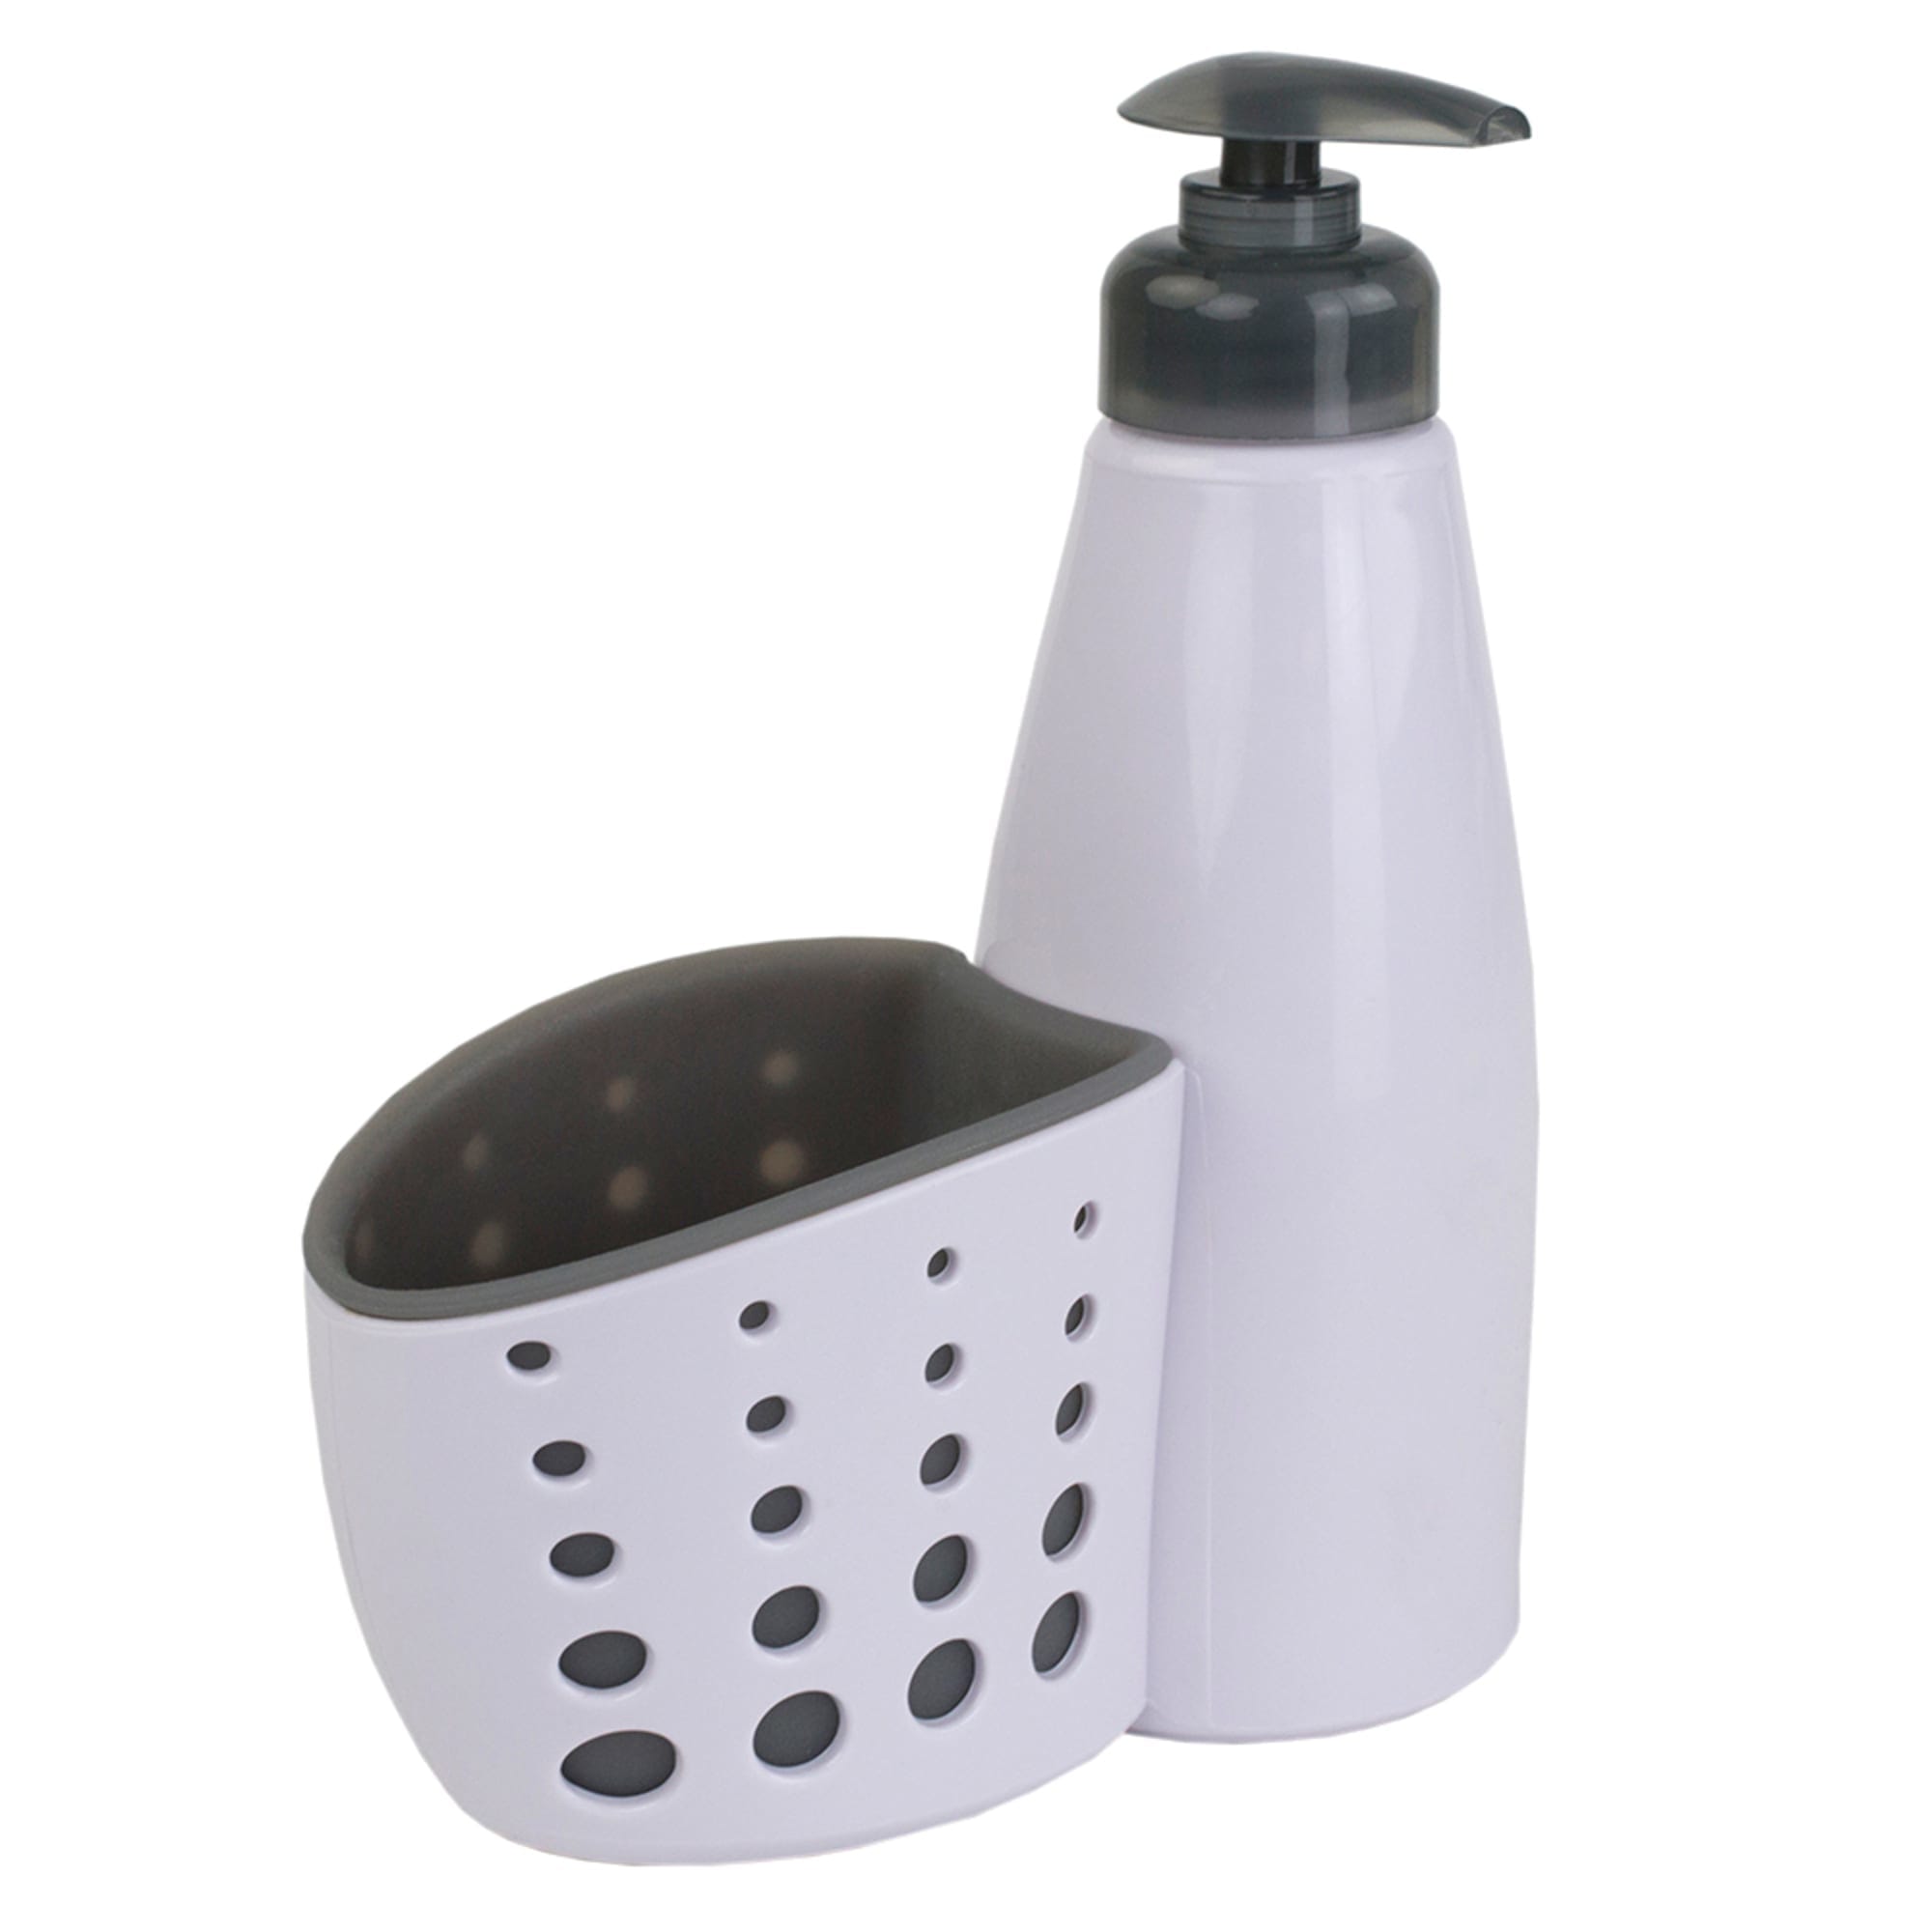 Home Basics Soap Dispenser with Sponge Holder, White $3.00 EACH, CASE PACK OF 24